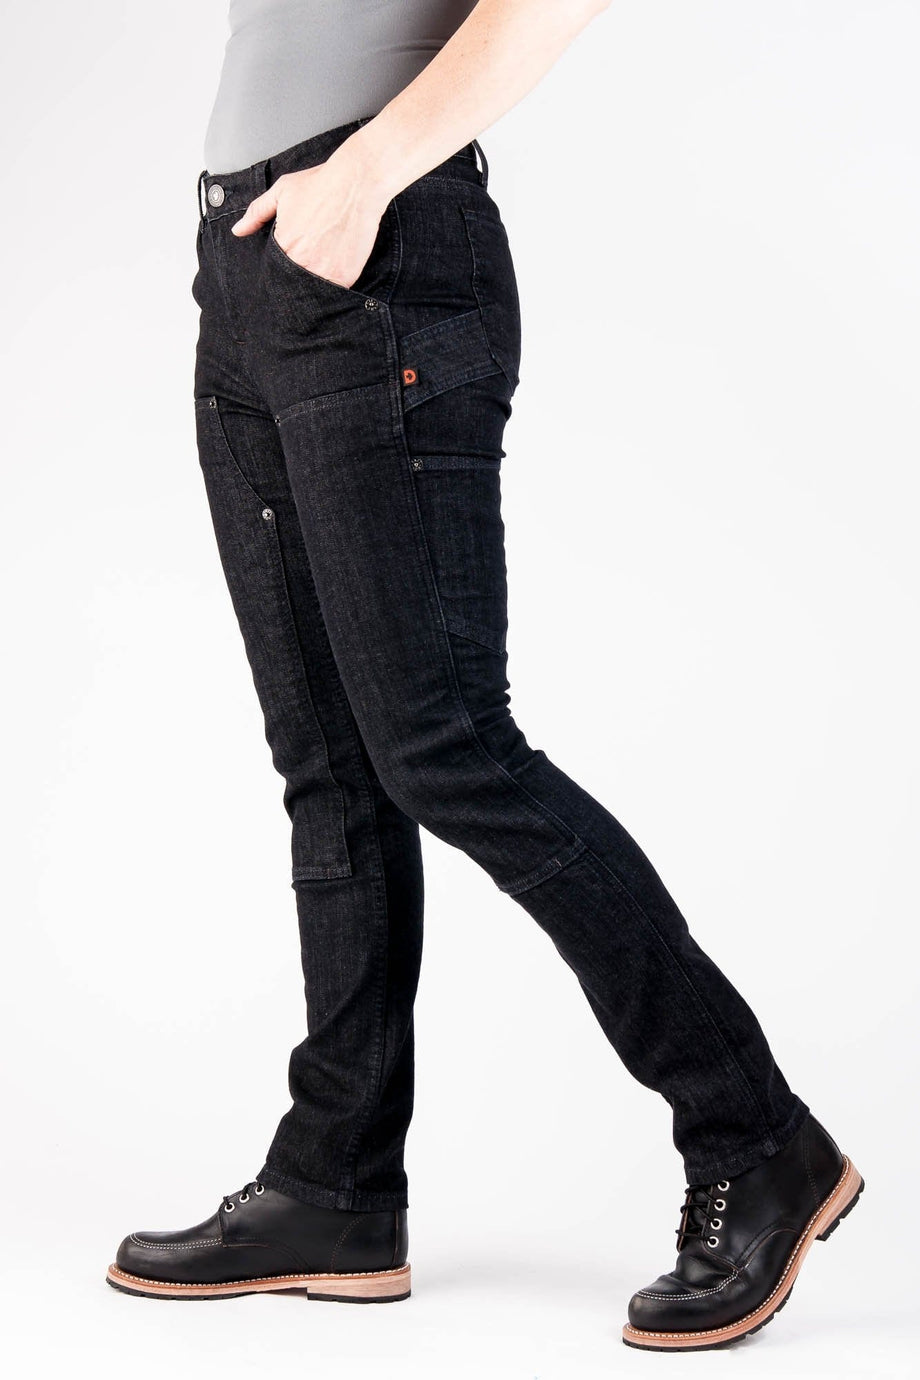 Dovetail Maven Slim Pants- Size 22/32 in 2023